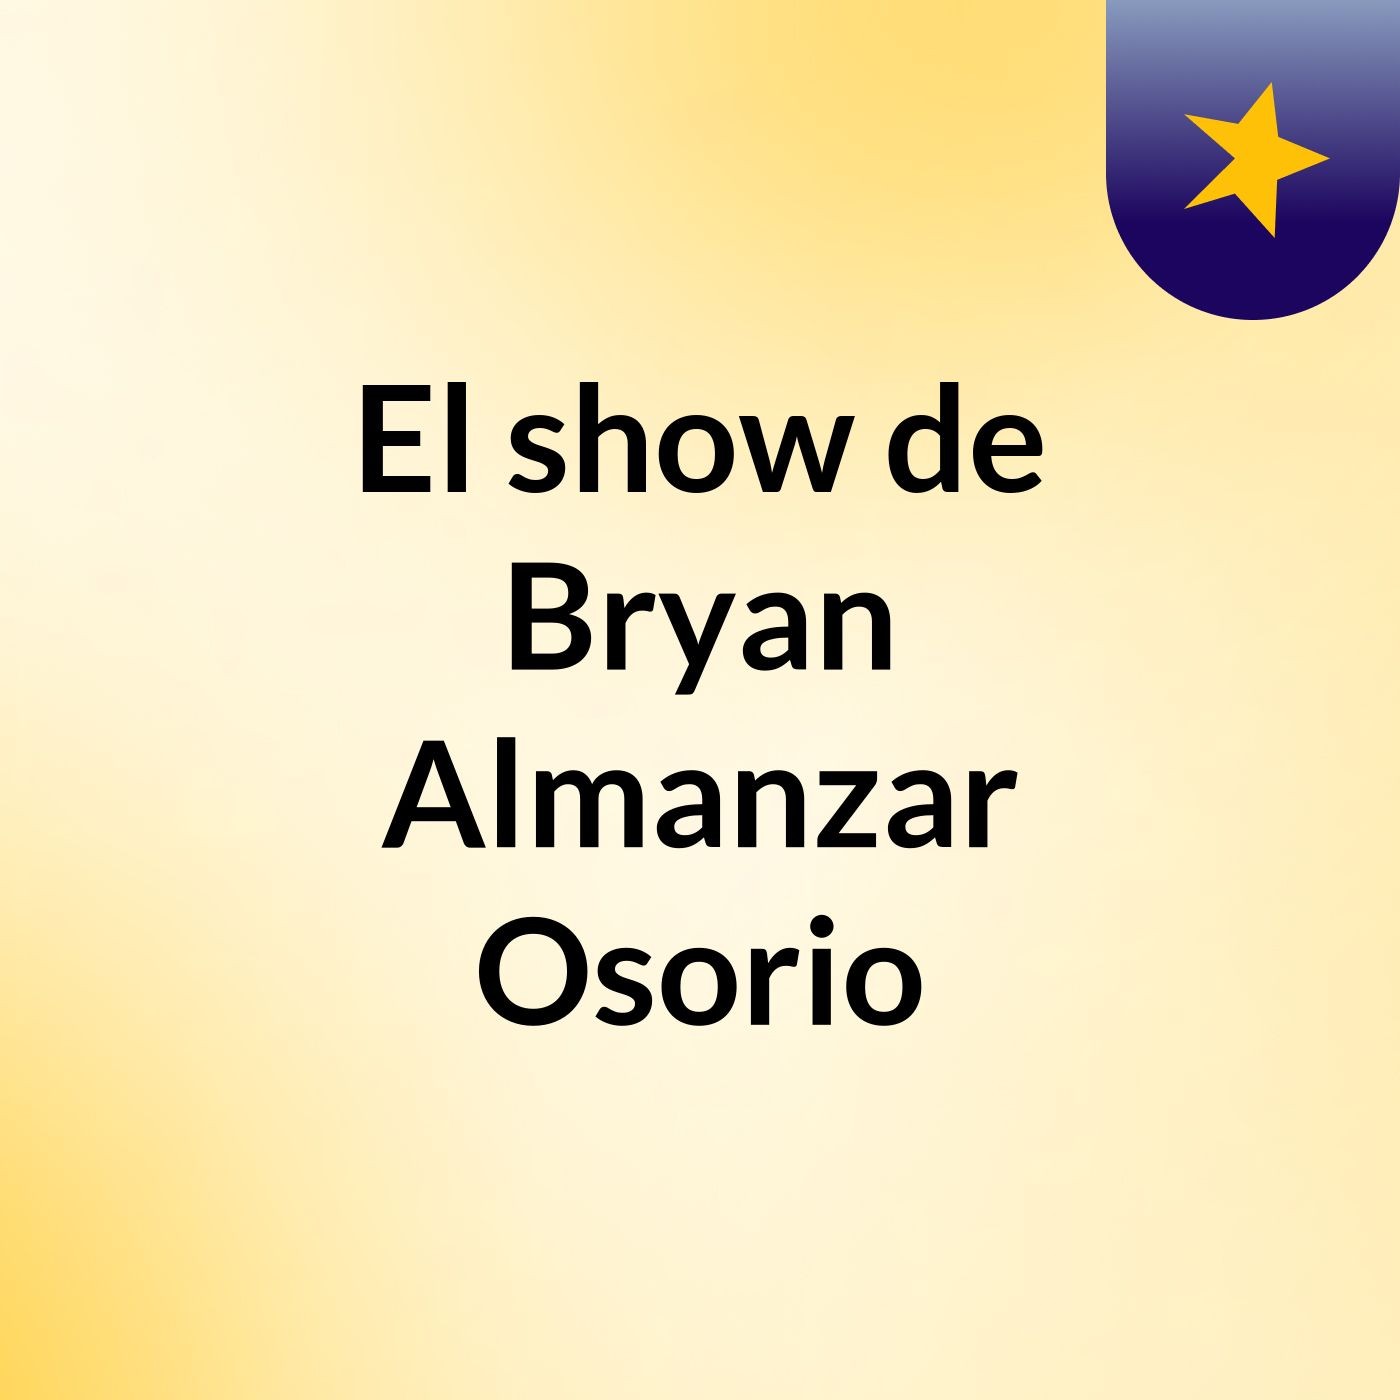 El show de Bryan Almanzar Osorio